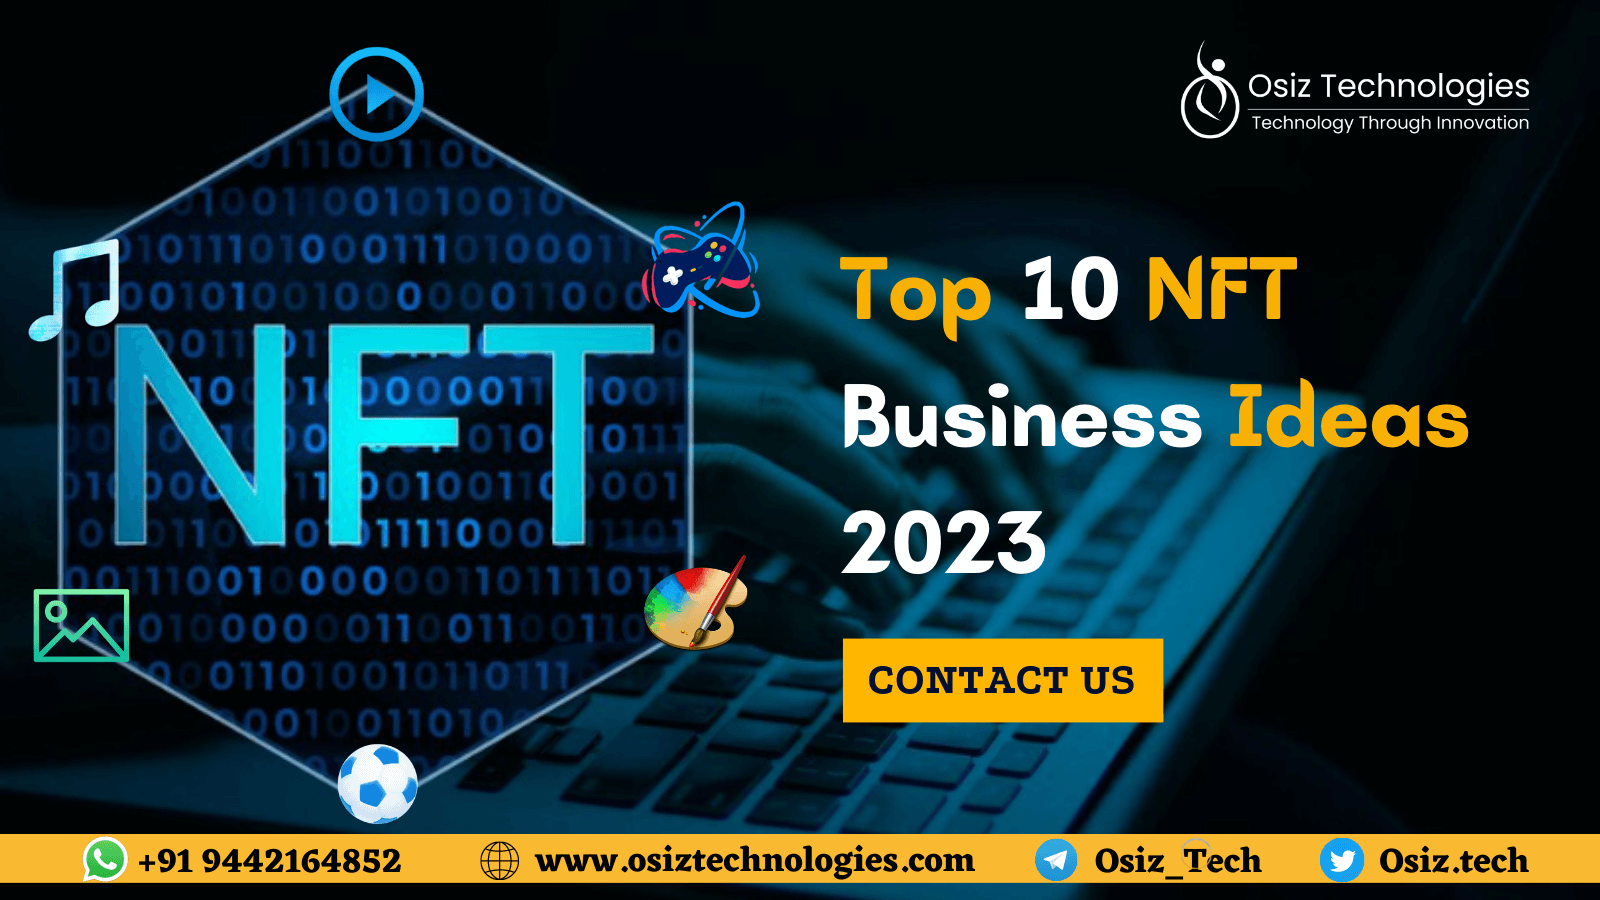 Top 10 NFT Business Ideas 2023